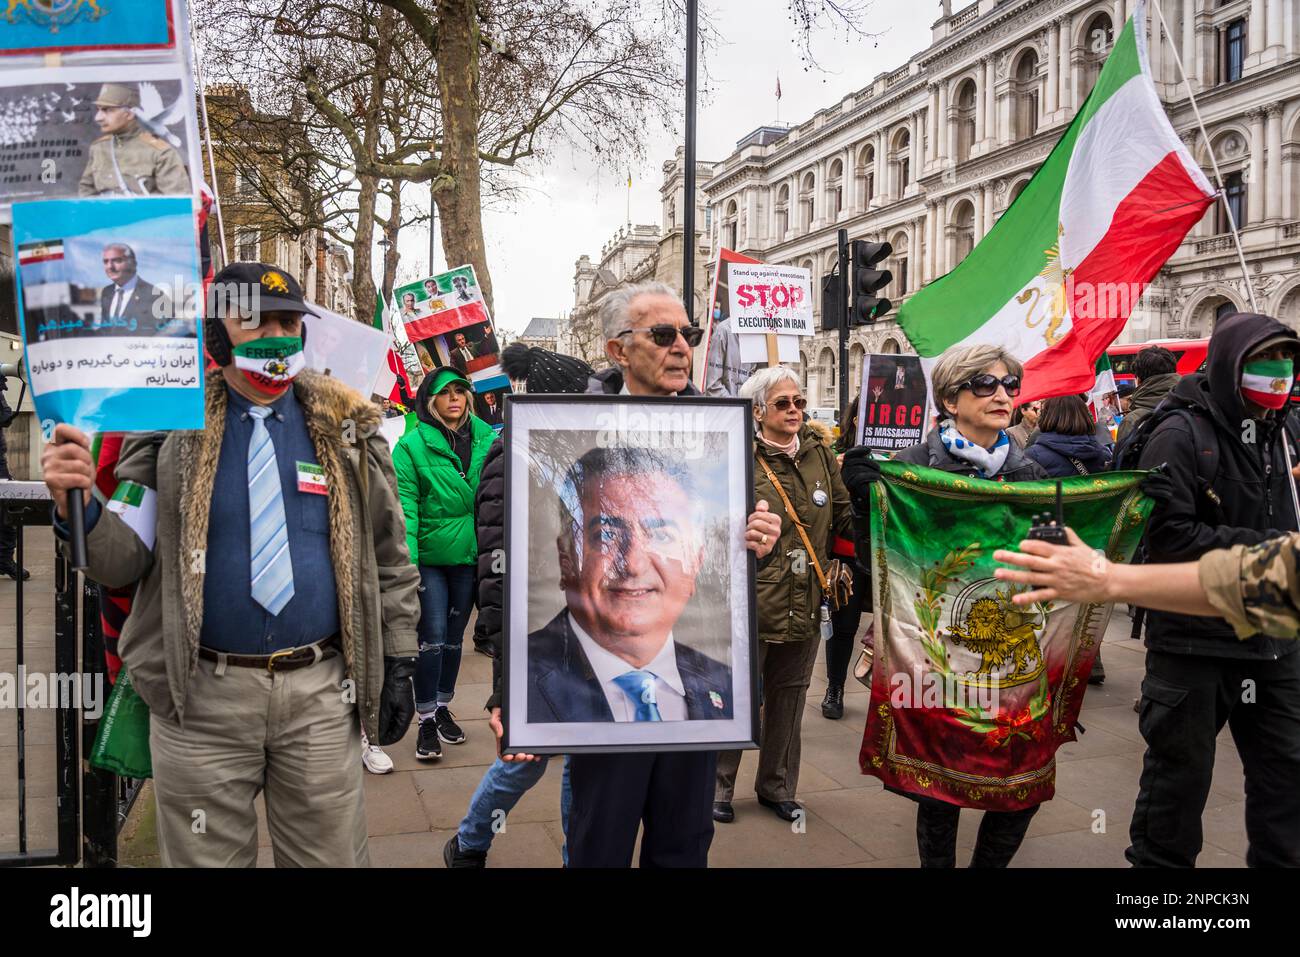 Der Mensch trägt das Bild von Reza Pahlavi, Kronprinz des Iran, prodemokratischer iranischer Protest gegen die autokratische islamistische Regierung des Iran, Centr Stockfoto